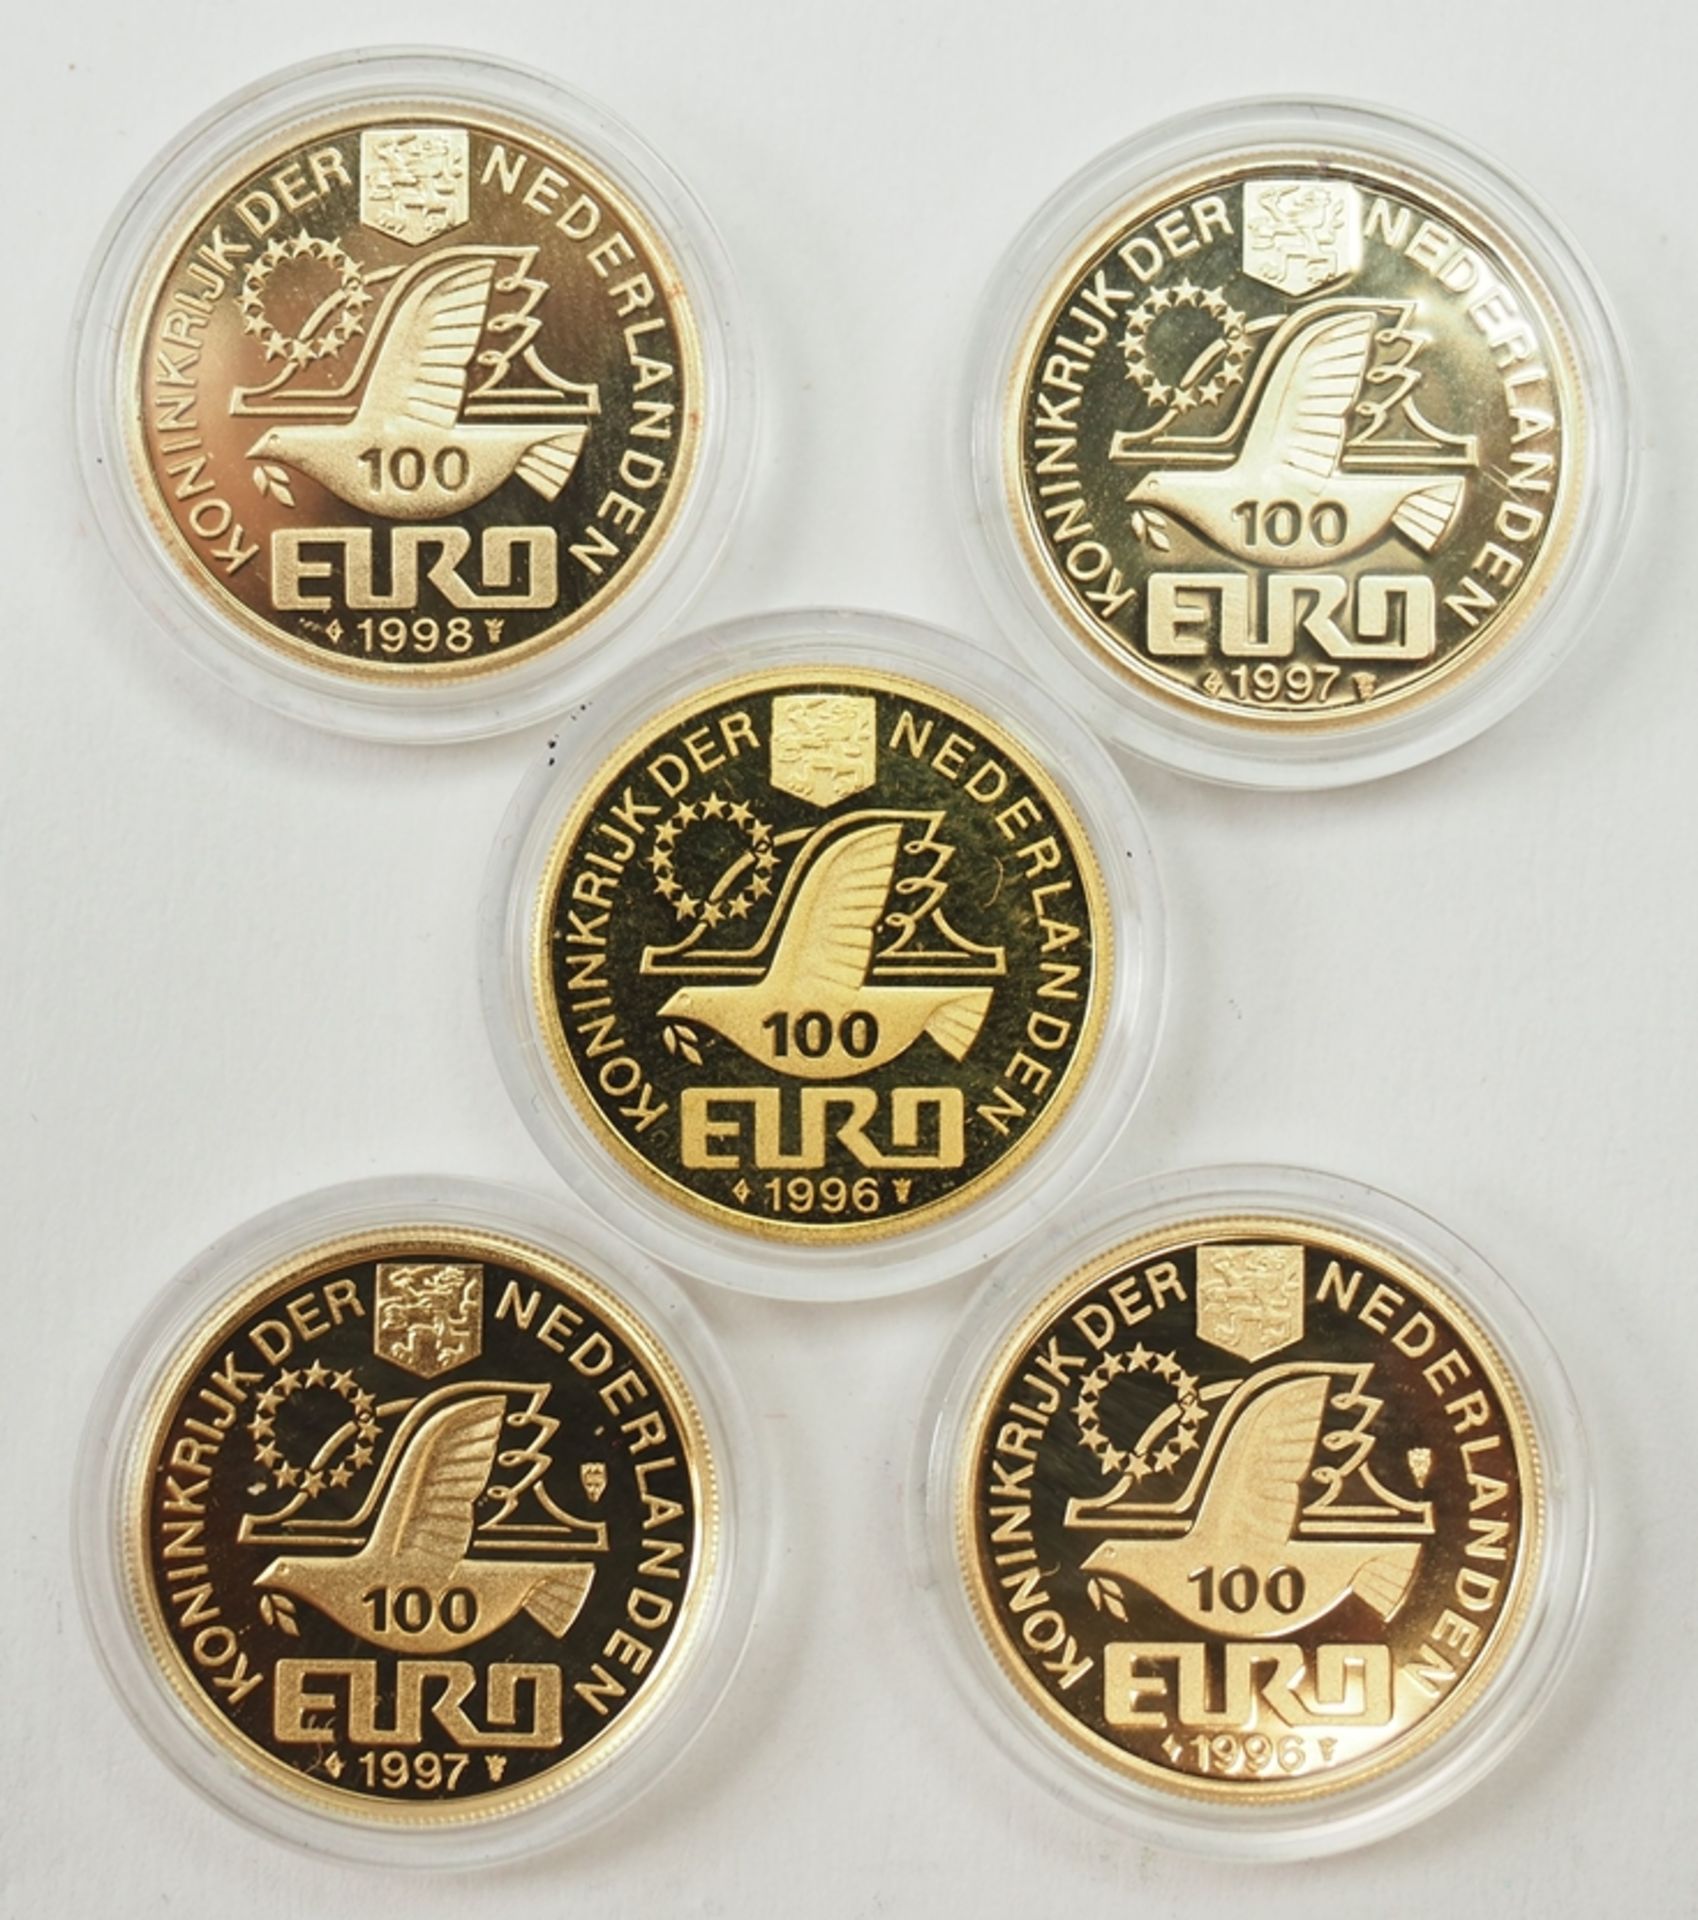 Niederlande: GOLD Münzen Satz Große Entdecker - 5 Exemplare. - Bild 2 aus 2